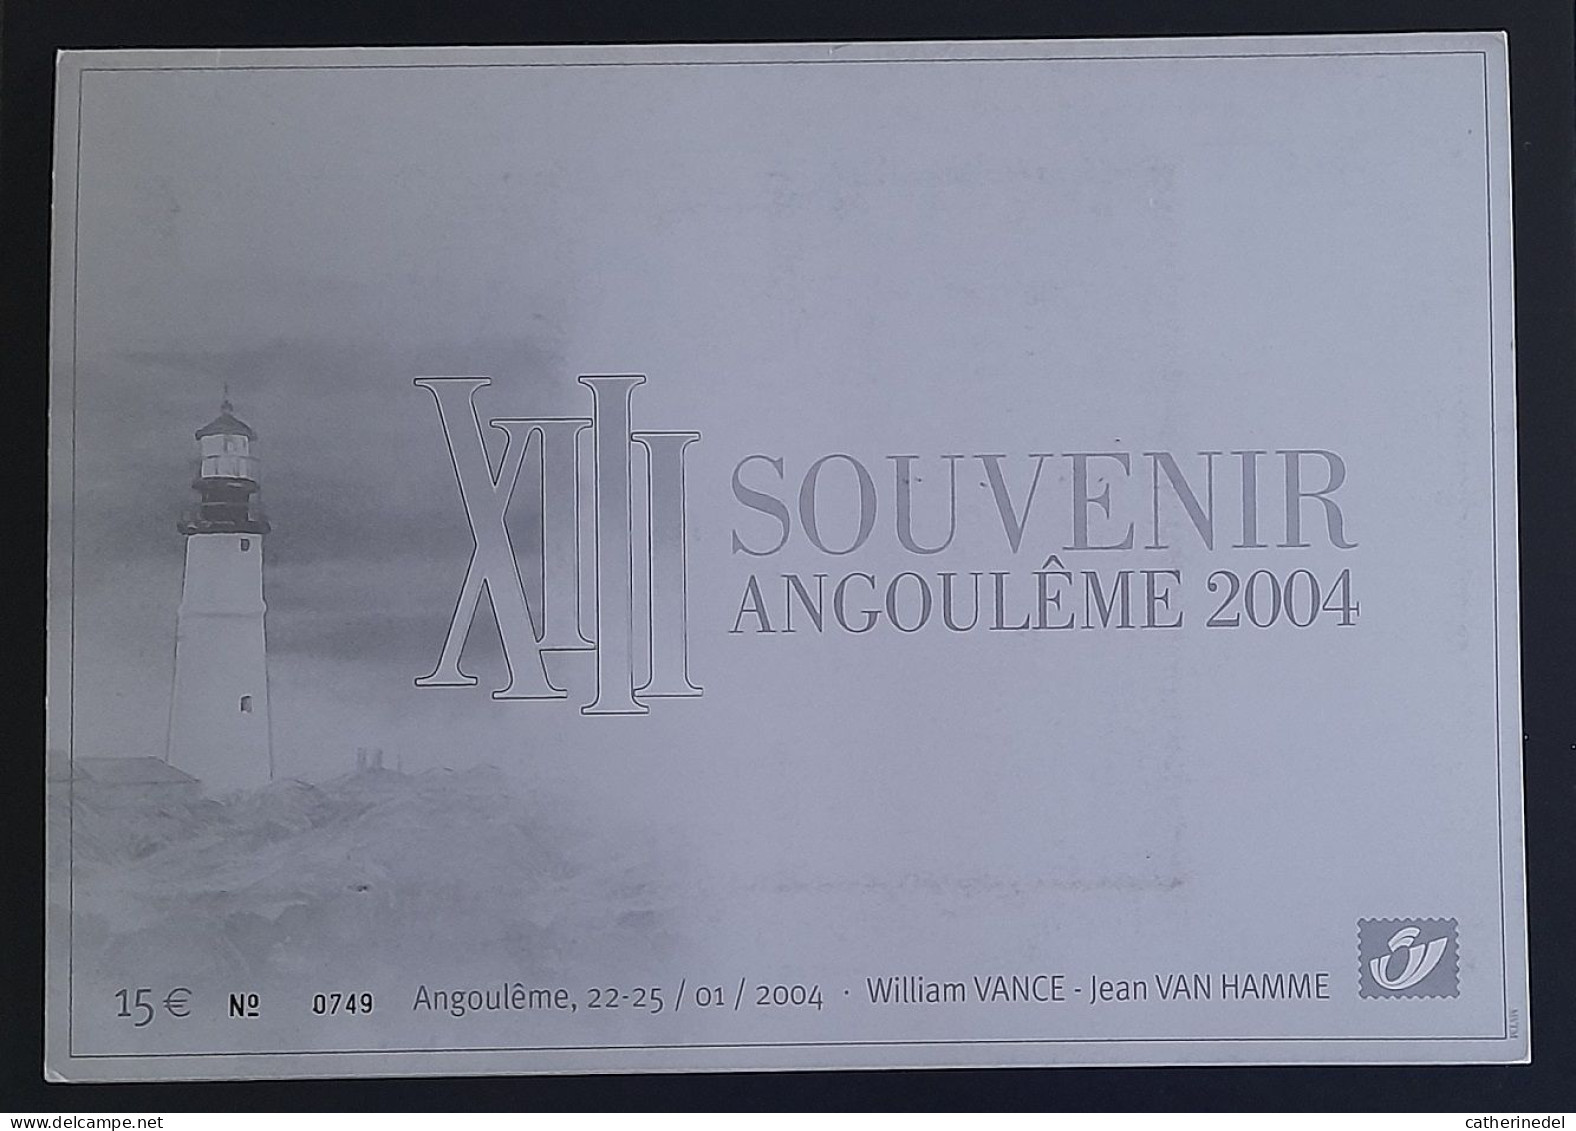 Année 2004 : 3233 - Pochette Souvenir Angoulème 2004 XIII - William VANCE - Jean VAN HAMME - Numérotée 0749 - Philastrips